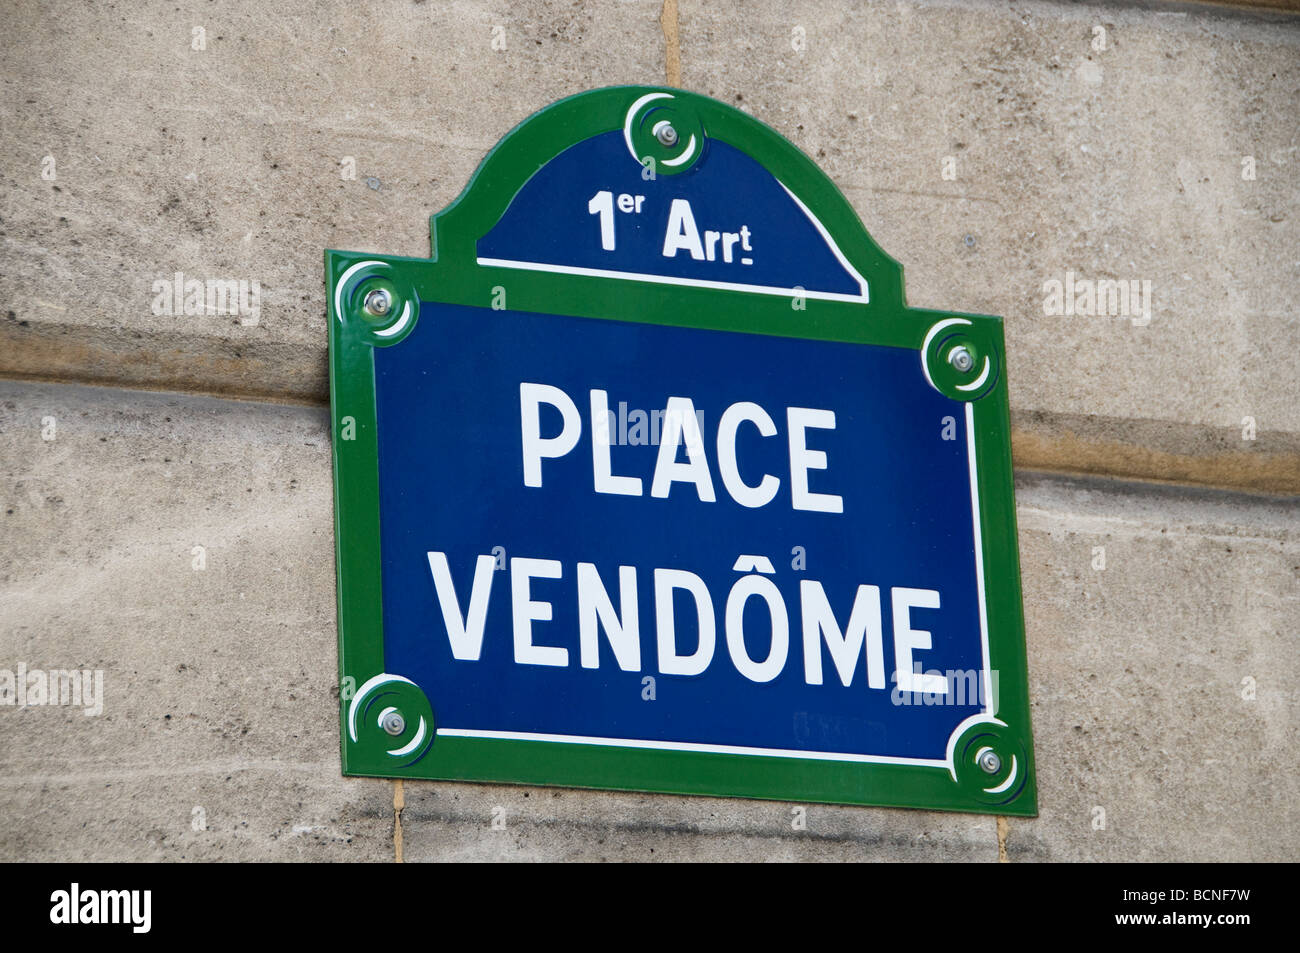 Place Vendome Parisian Paris France jeweller Stock Photo